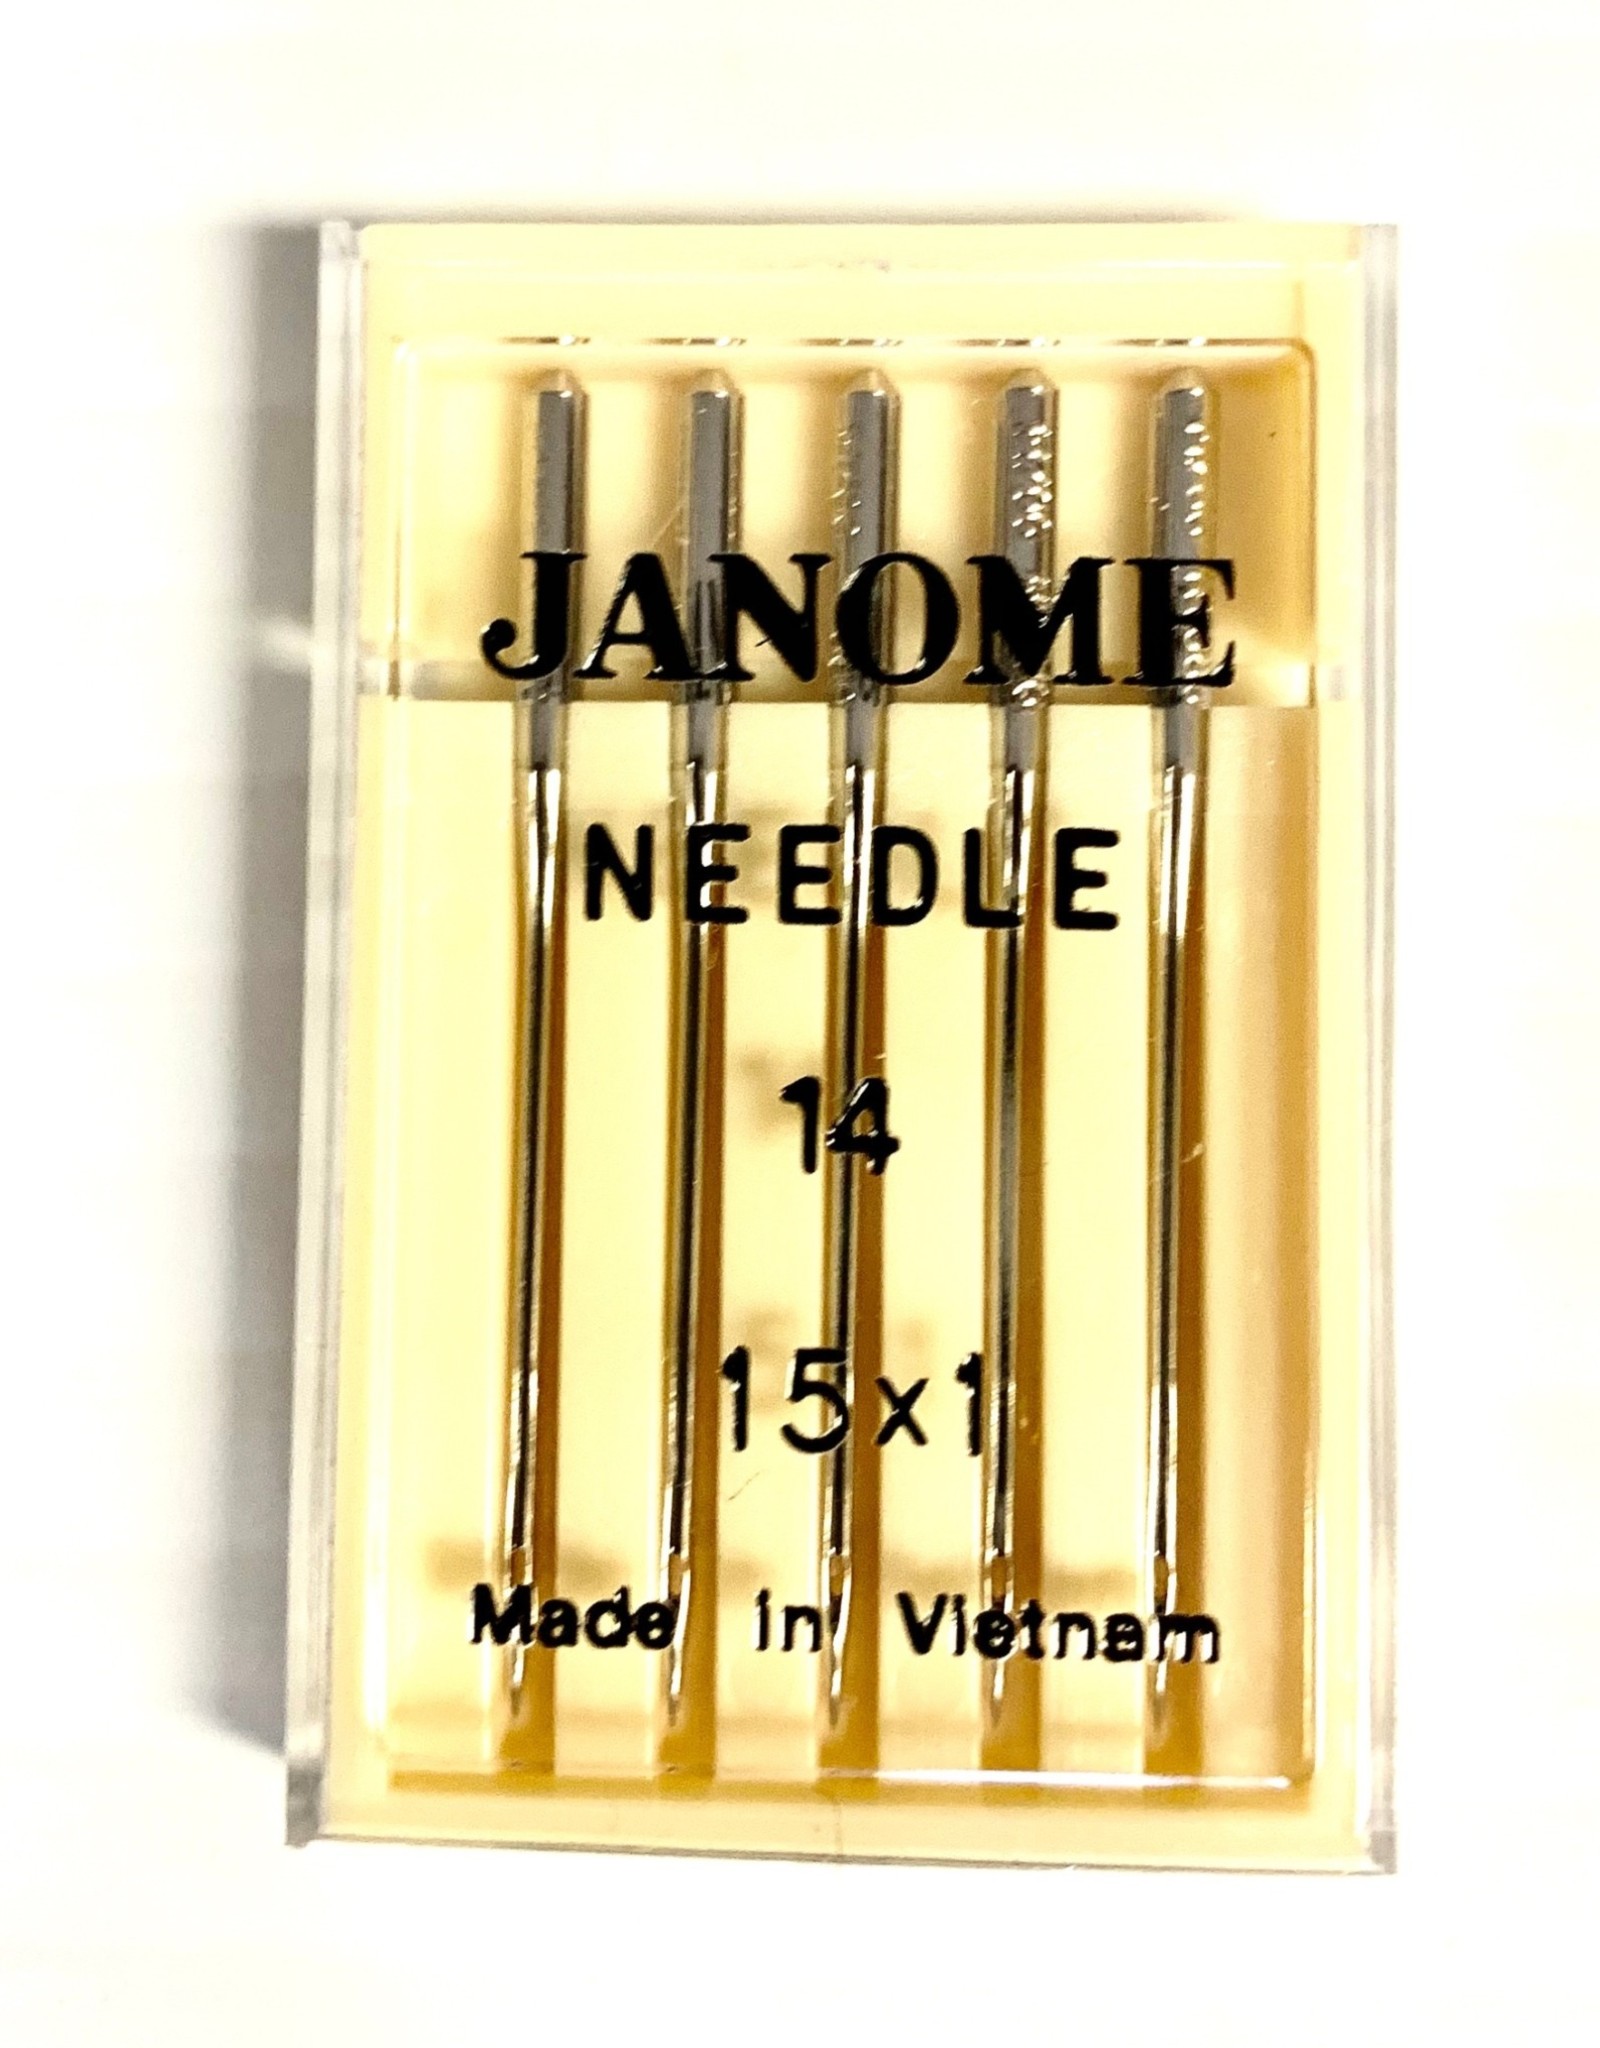 Janome Needle 14